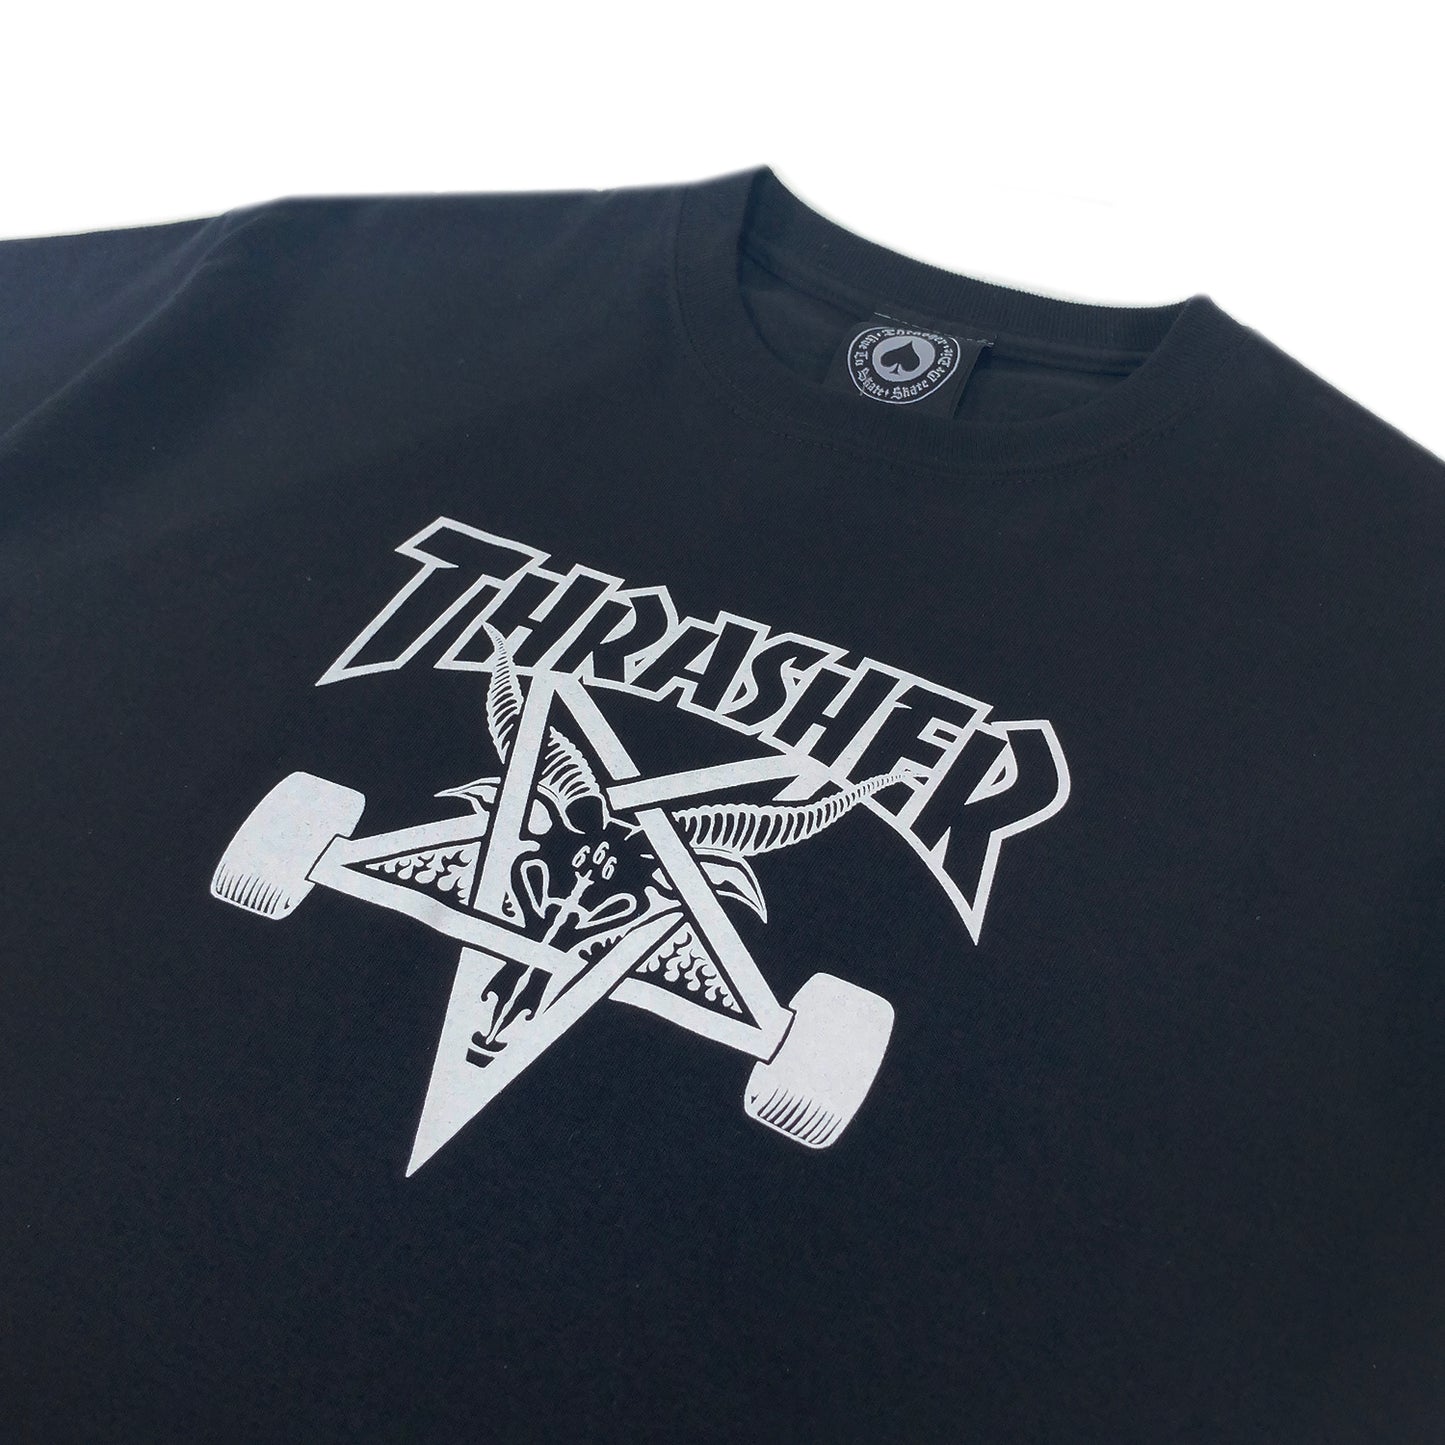 Thrasher Skategoat T Shirt - Black - Prime Delux Store